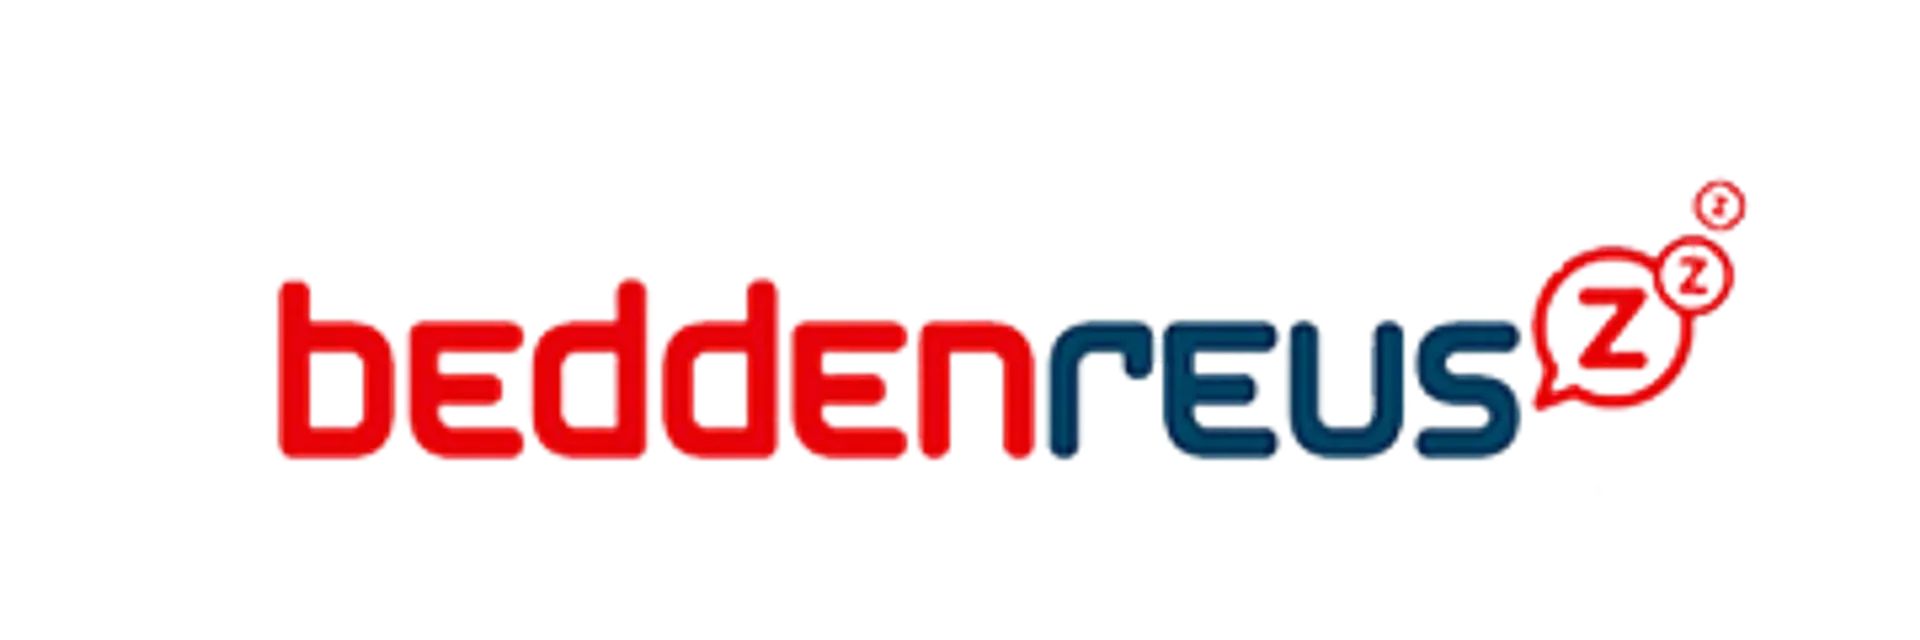 BEDDENREUS logo in de folder van deze week